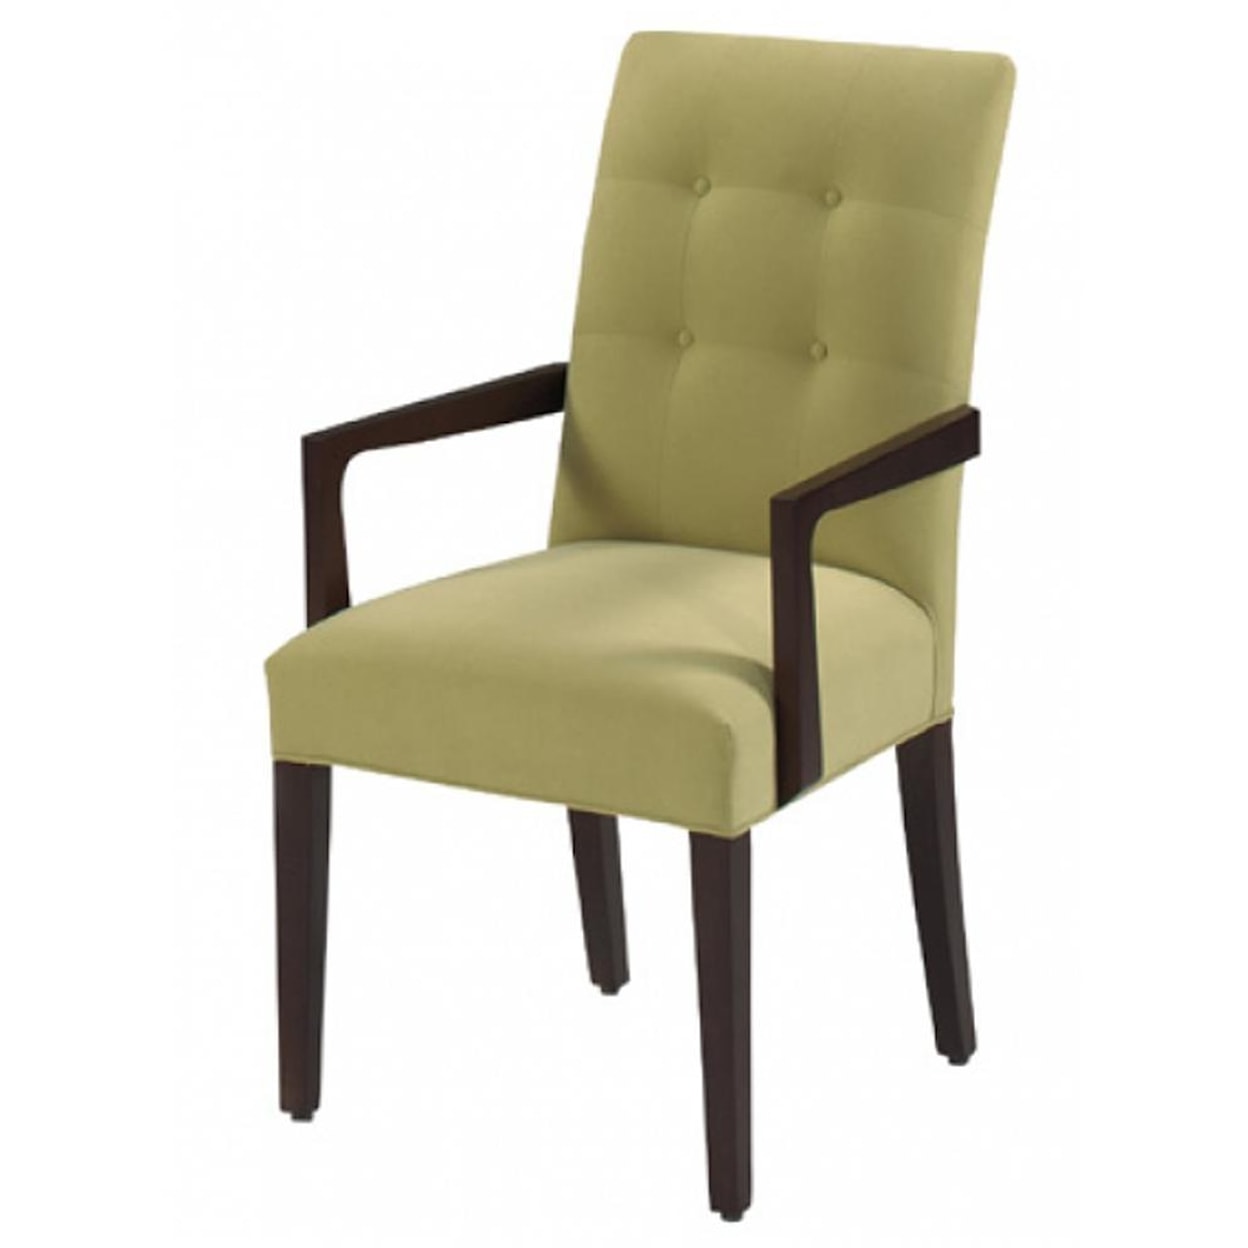 Designmaster Chairs  Atlanta Arm Chair